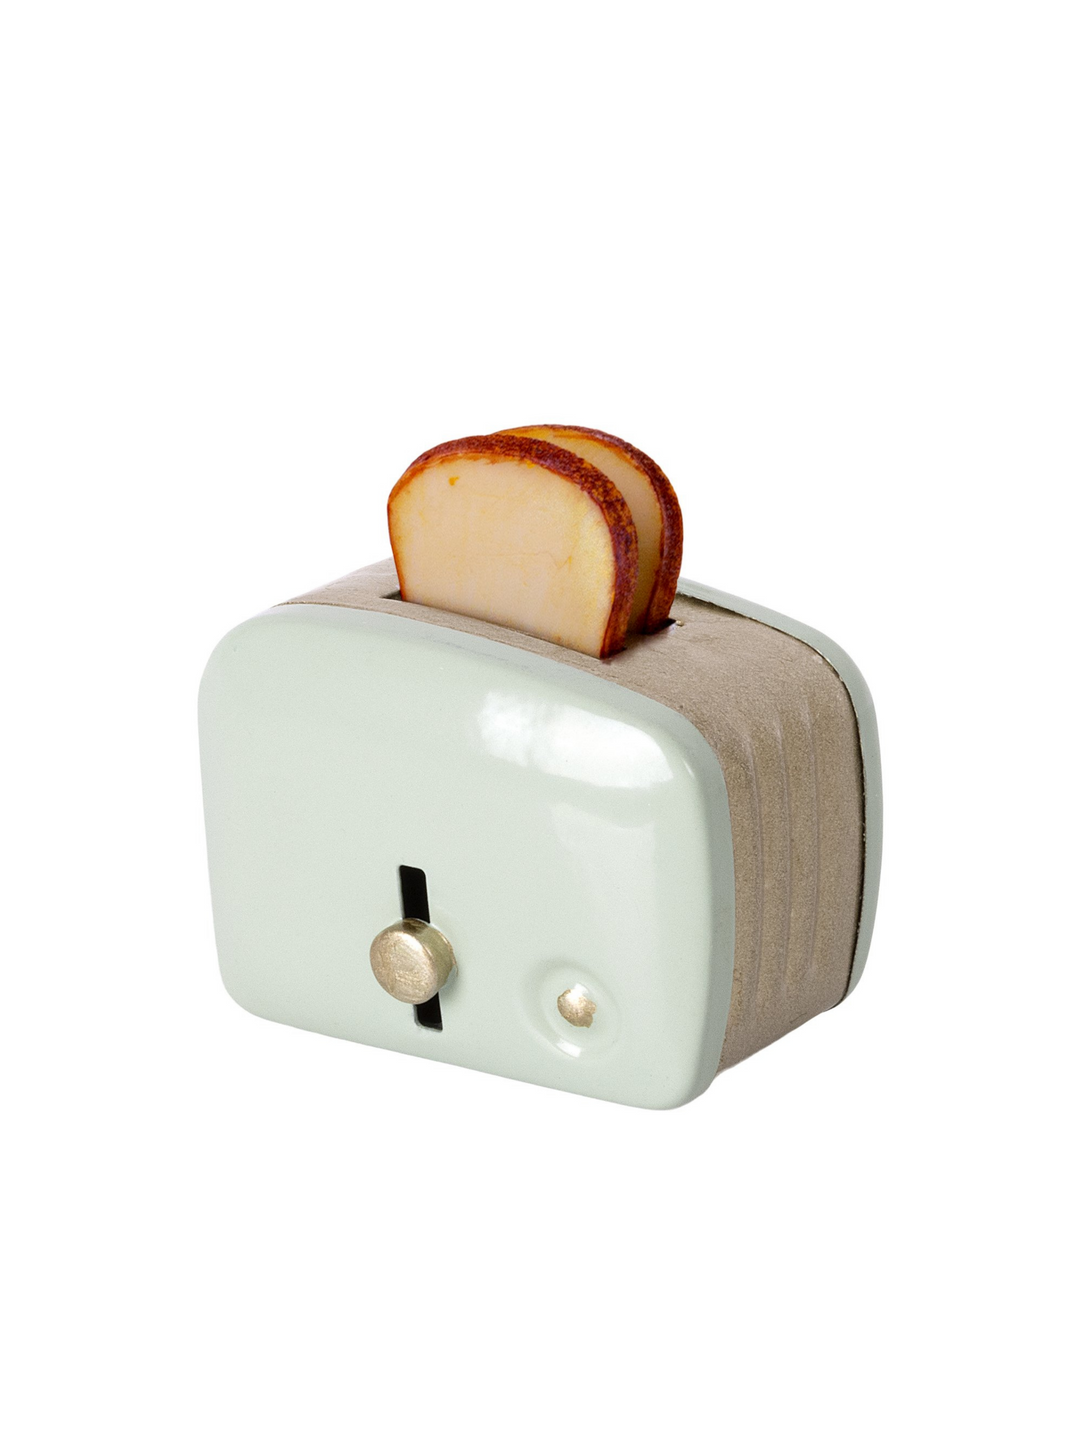 Miniature Toaster & Bread in Mint: Dollhouse Breakfast Set